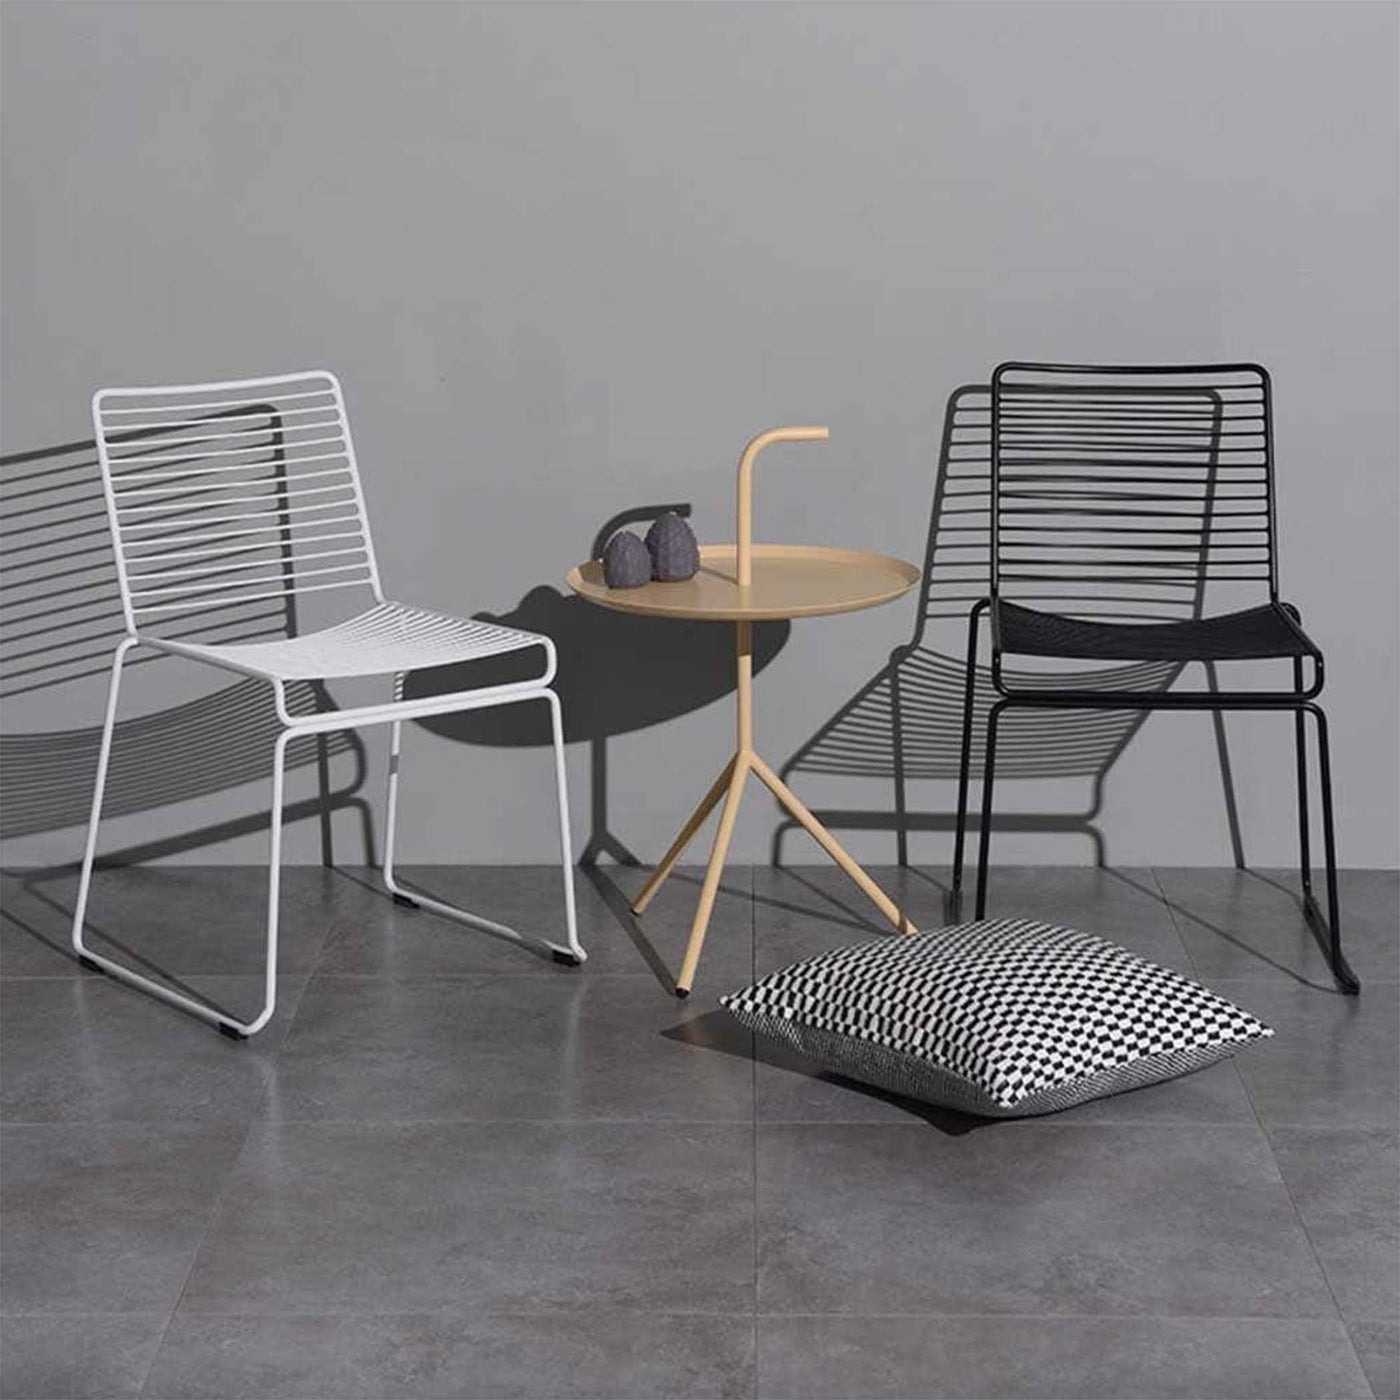 La chaise à dîner HEE se distingue par son esthétique épurée et son minimalisme raffiné. Son design simple met en valeur l'absence de détails inutiles, et cette caractéristique est encore plus prononcée grâce à sa hauteur et à ses longs pieds fins.